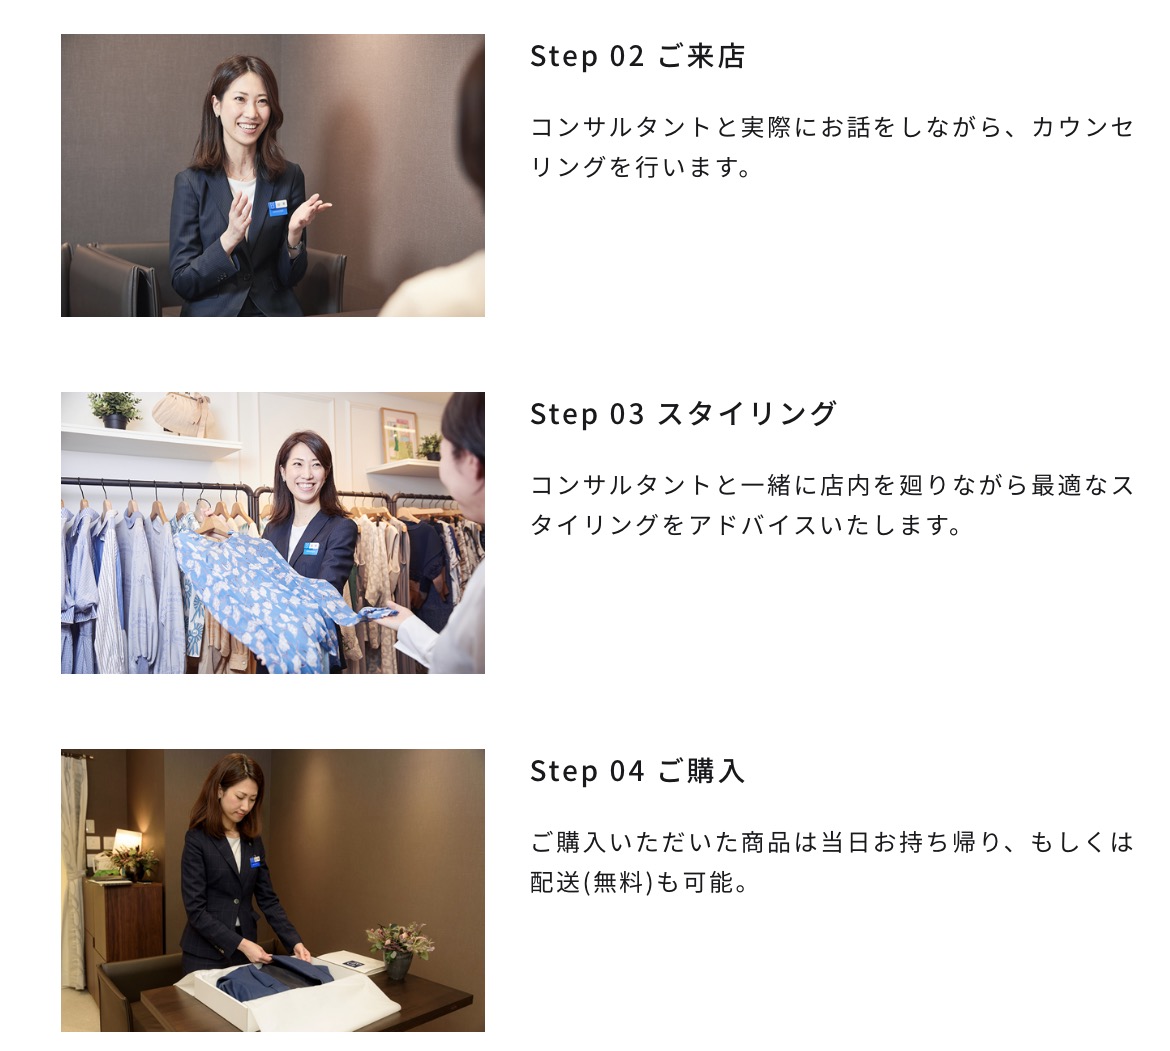 松屋銀座ファッションコンサルティングサービス公式サイト特徴